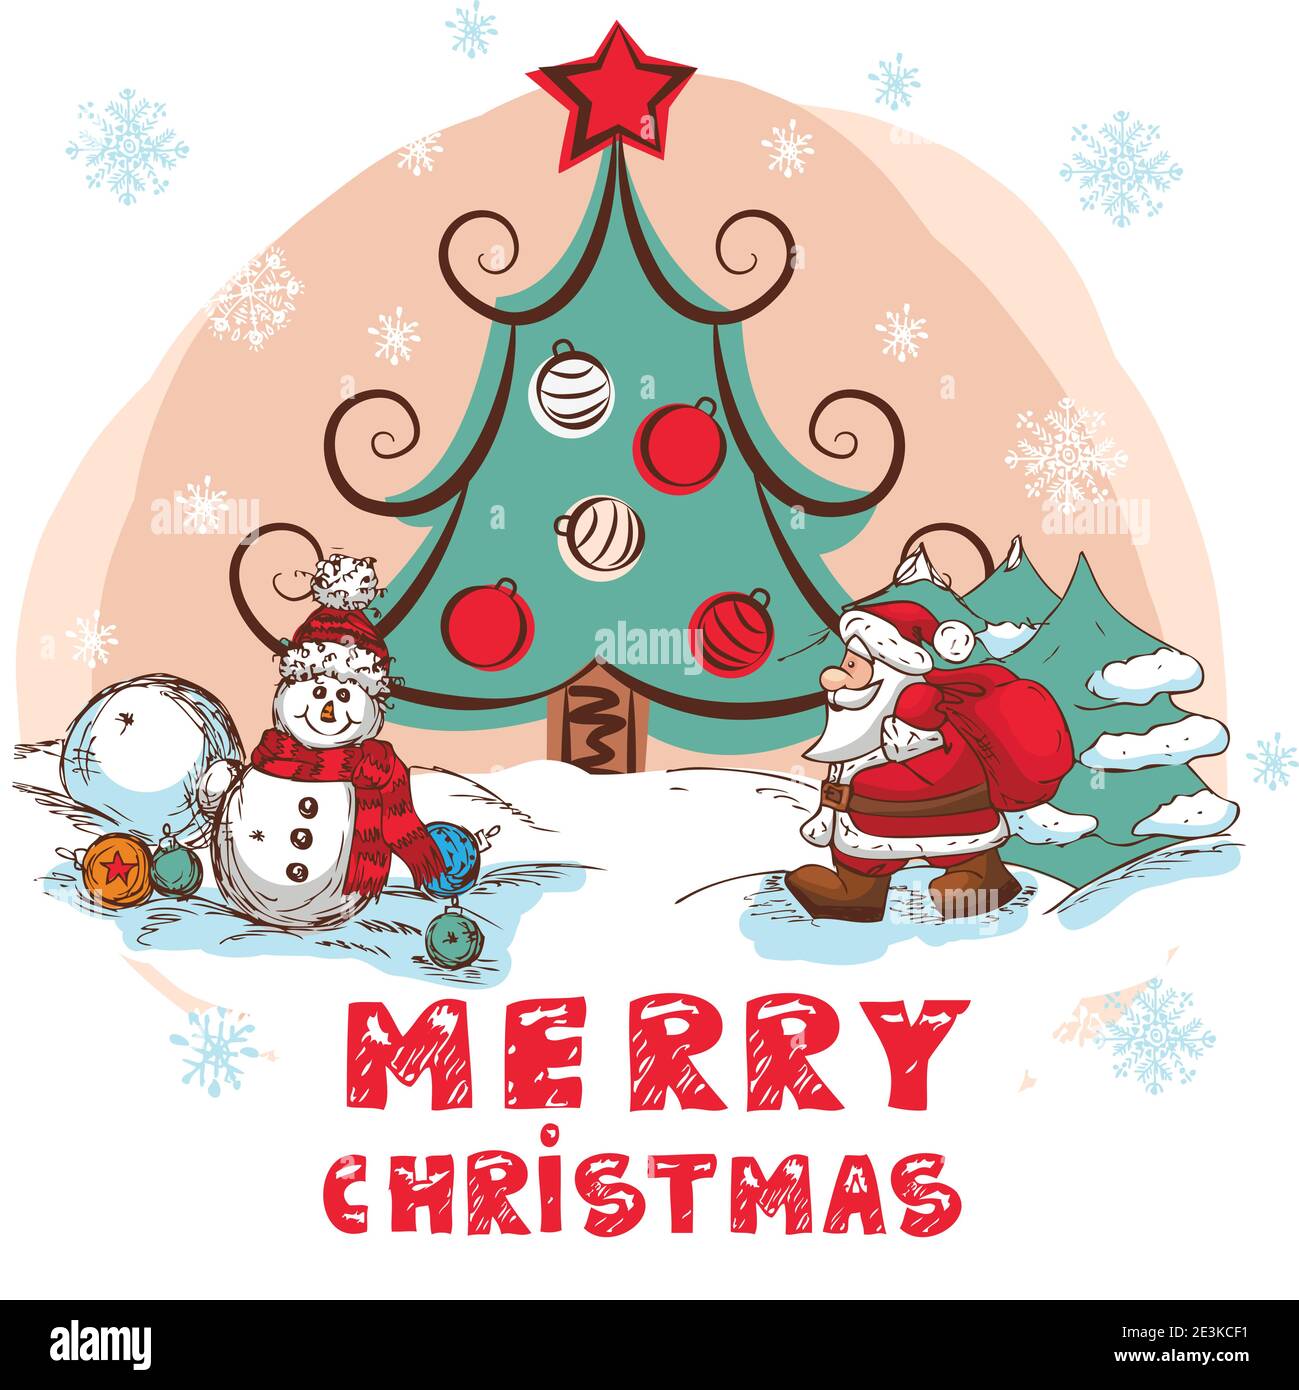 Weihnachtsillustration mit Weihnachtsmann und Schneemann - Neujahrspostkarte im Retro-Stil mit Text - Vektor. Stock Vektor